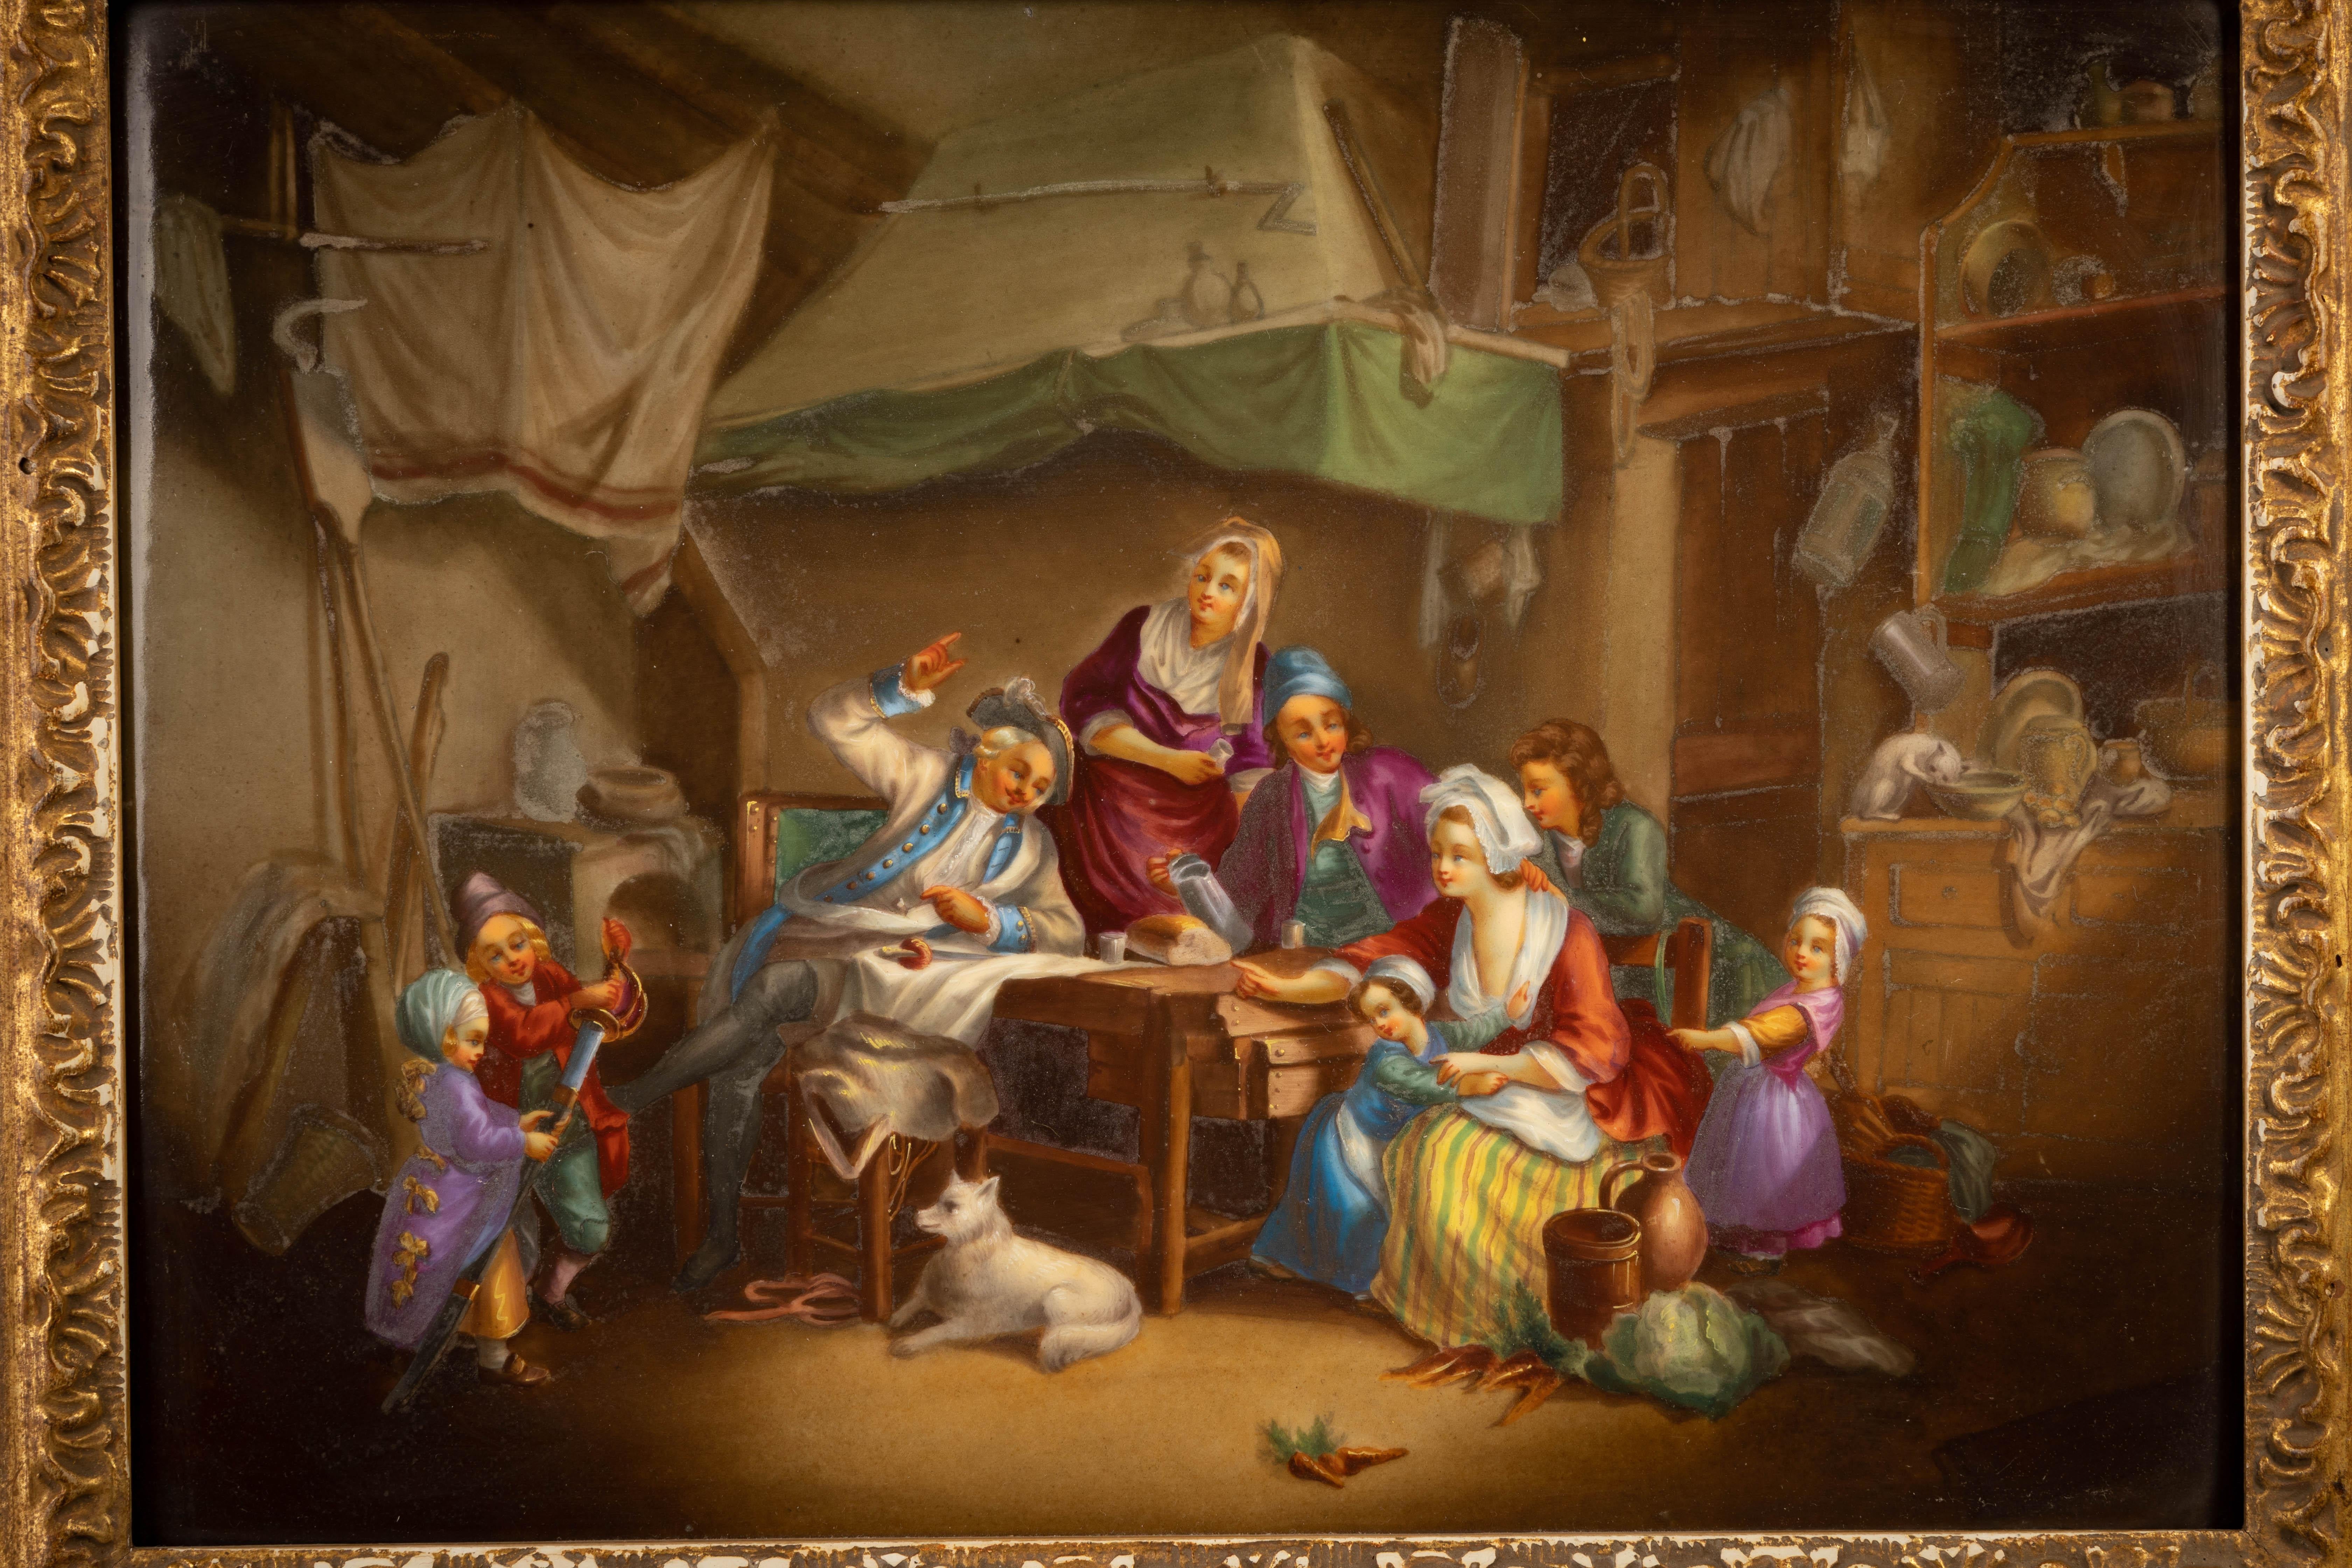 Représentation d'un groupe de personnages autour d'une table avec une miche de pain, un personnage moustachu faisant des gestes avec son épée sur la table et deux enfants à ses côtés jouant avec une autre épée ainsi que d'autres personnages aux